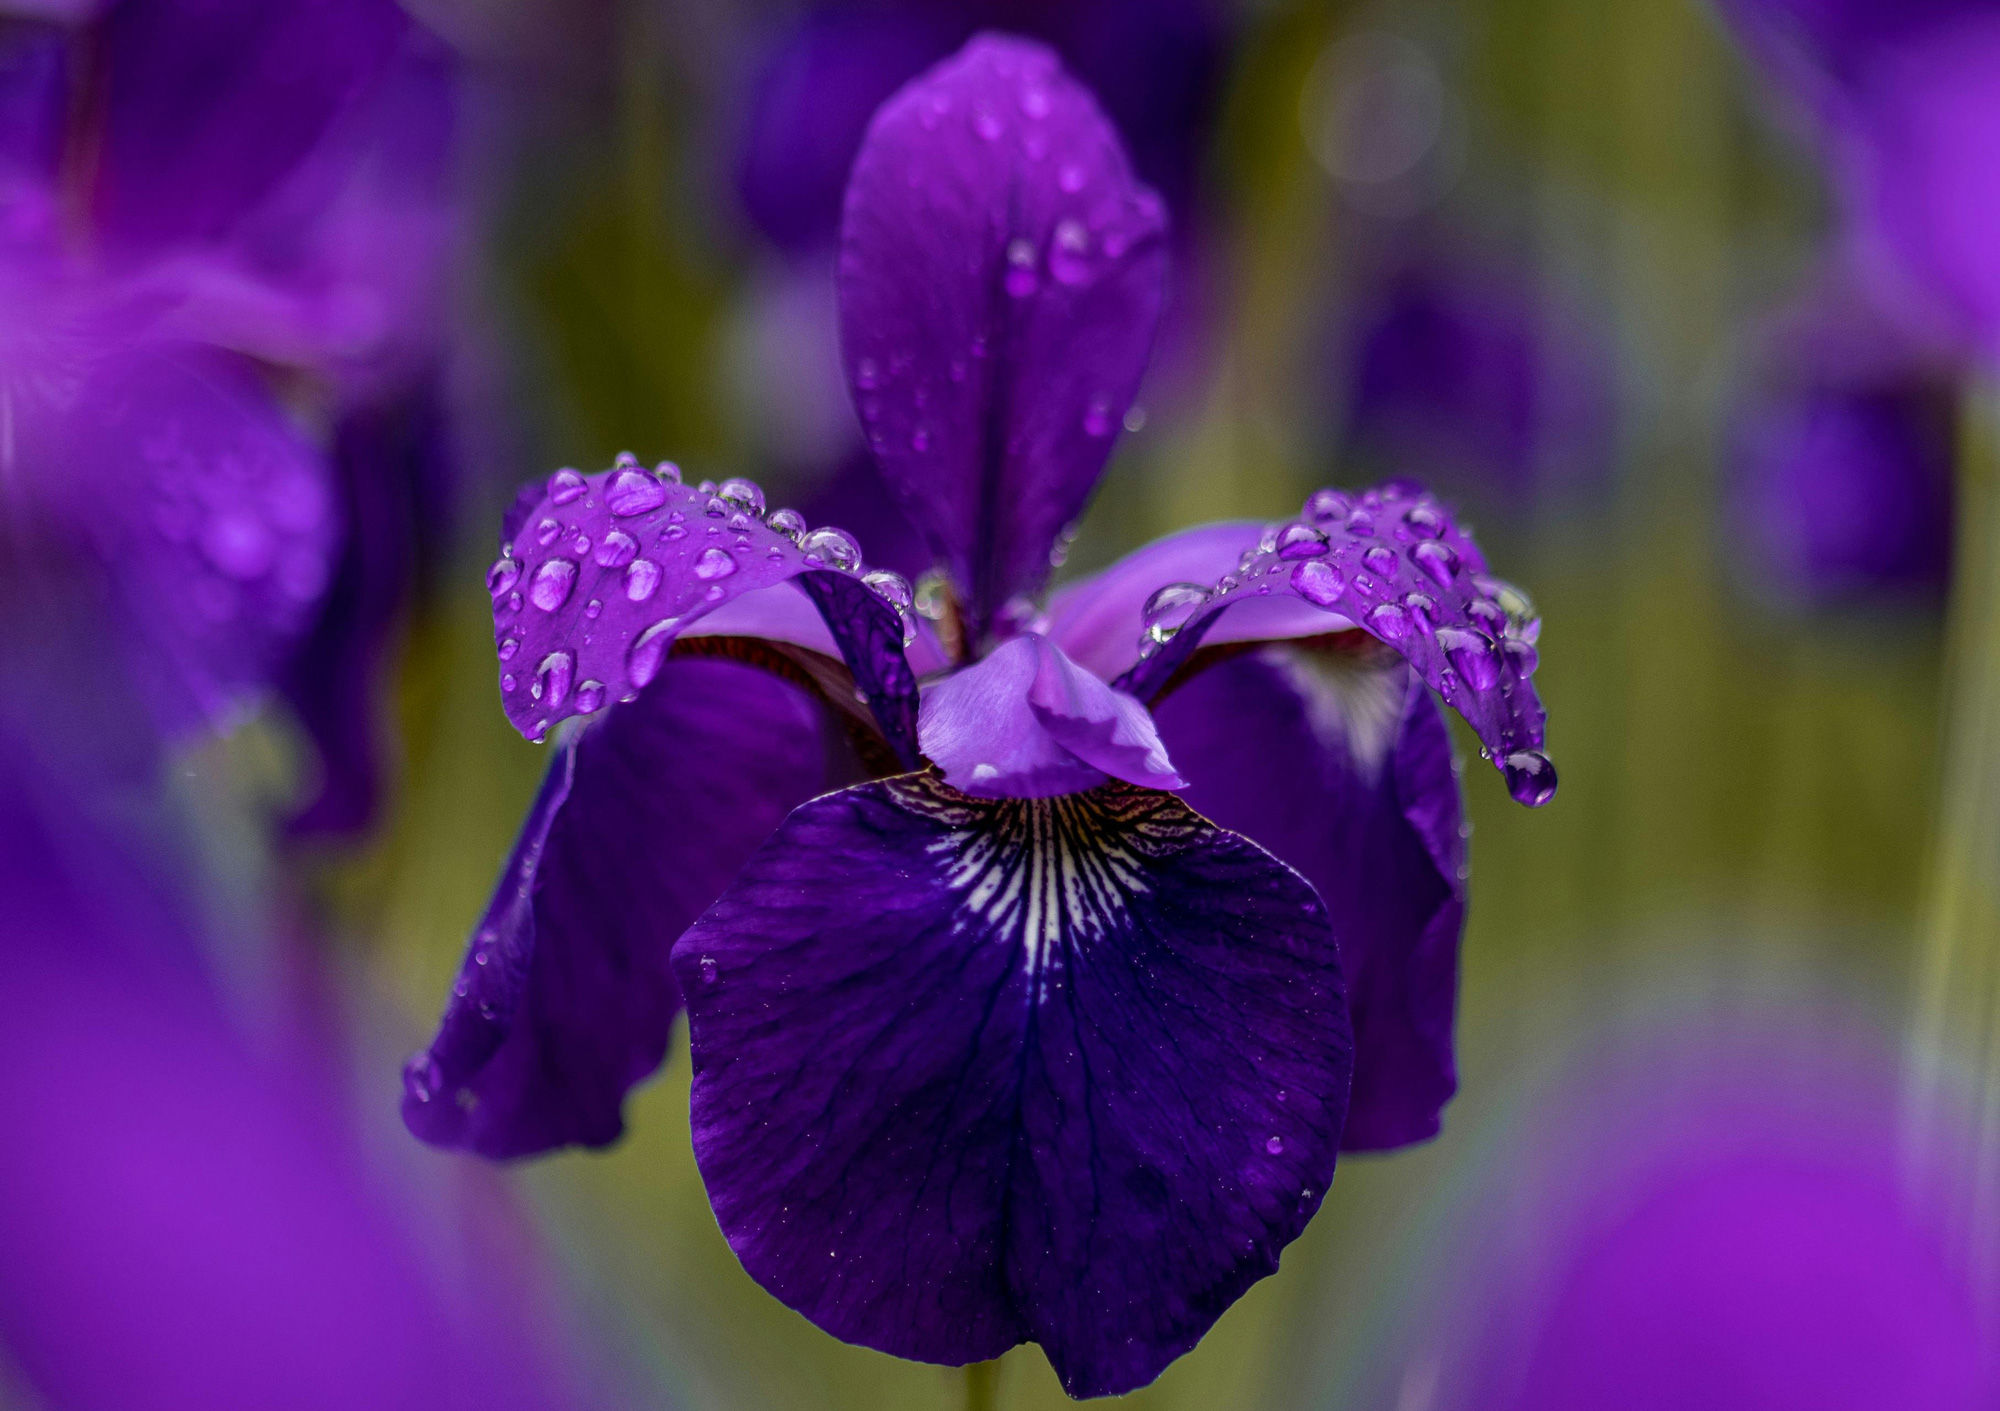 De Iris is een romantische bloem. Iris betekent in het Grieks regenboog.